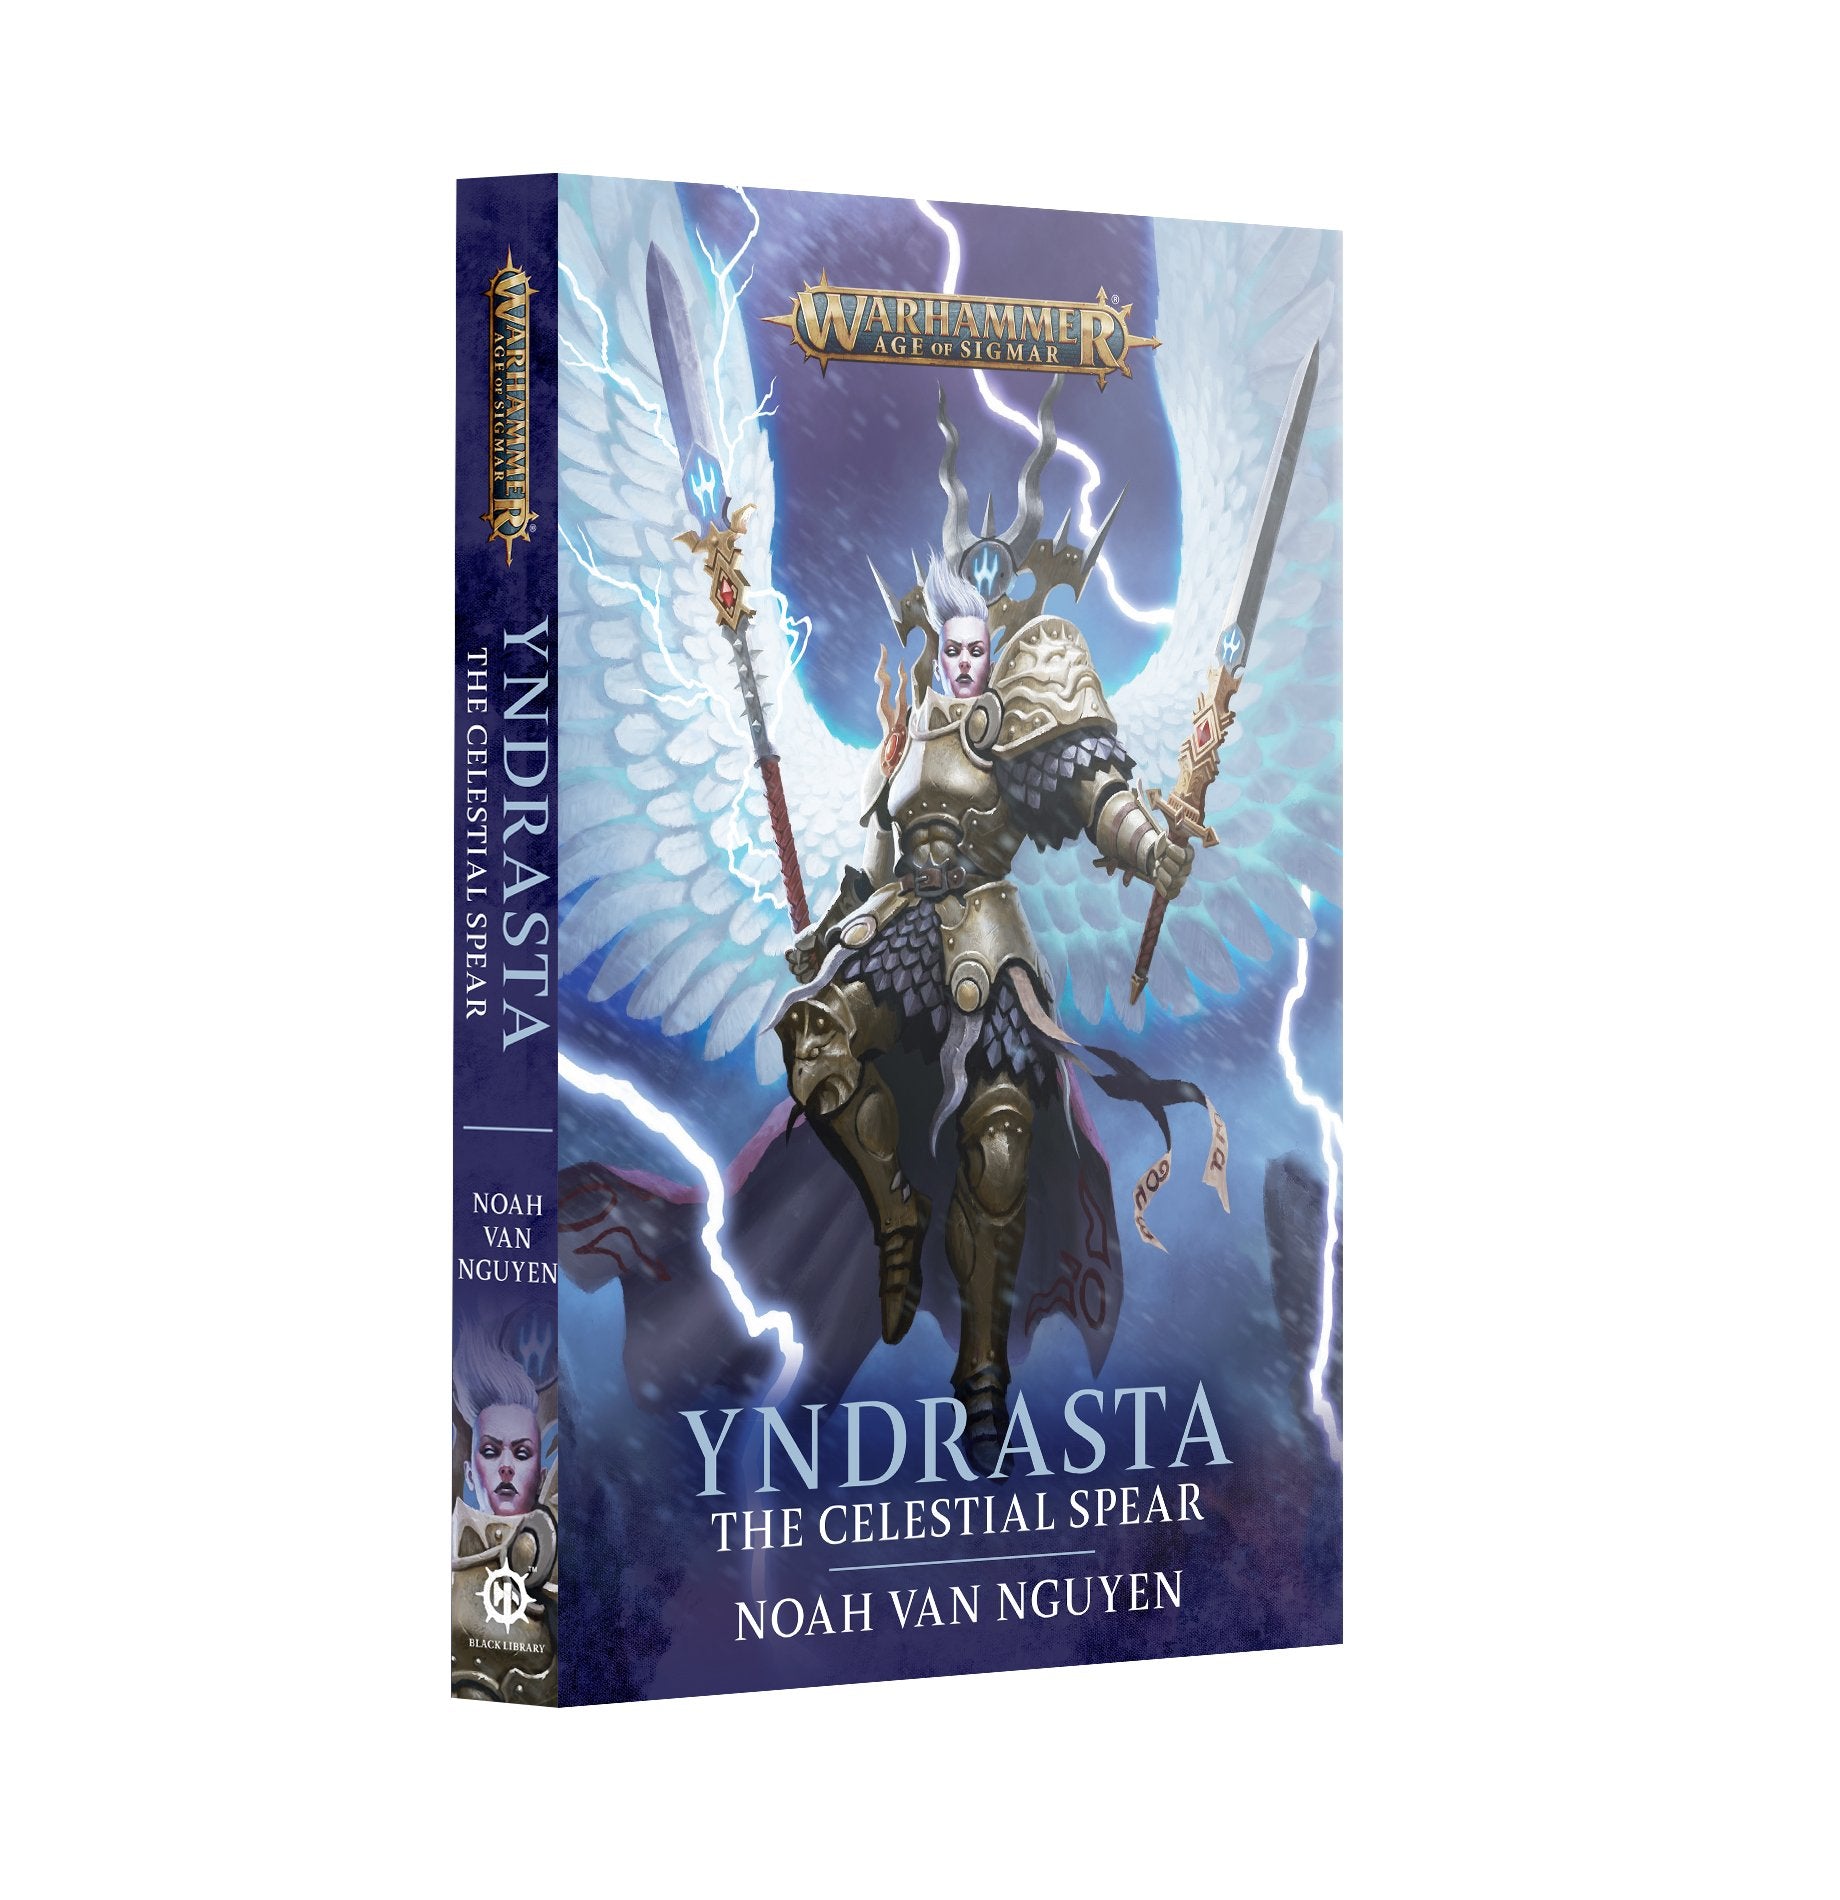 Yndrasta: The Celestial Spear (Paperback) - Release Date 11/5/24